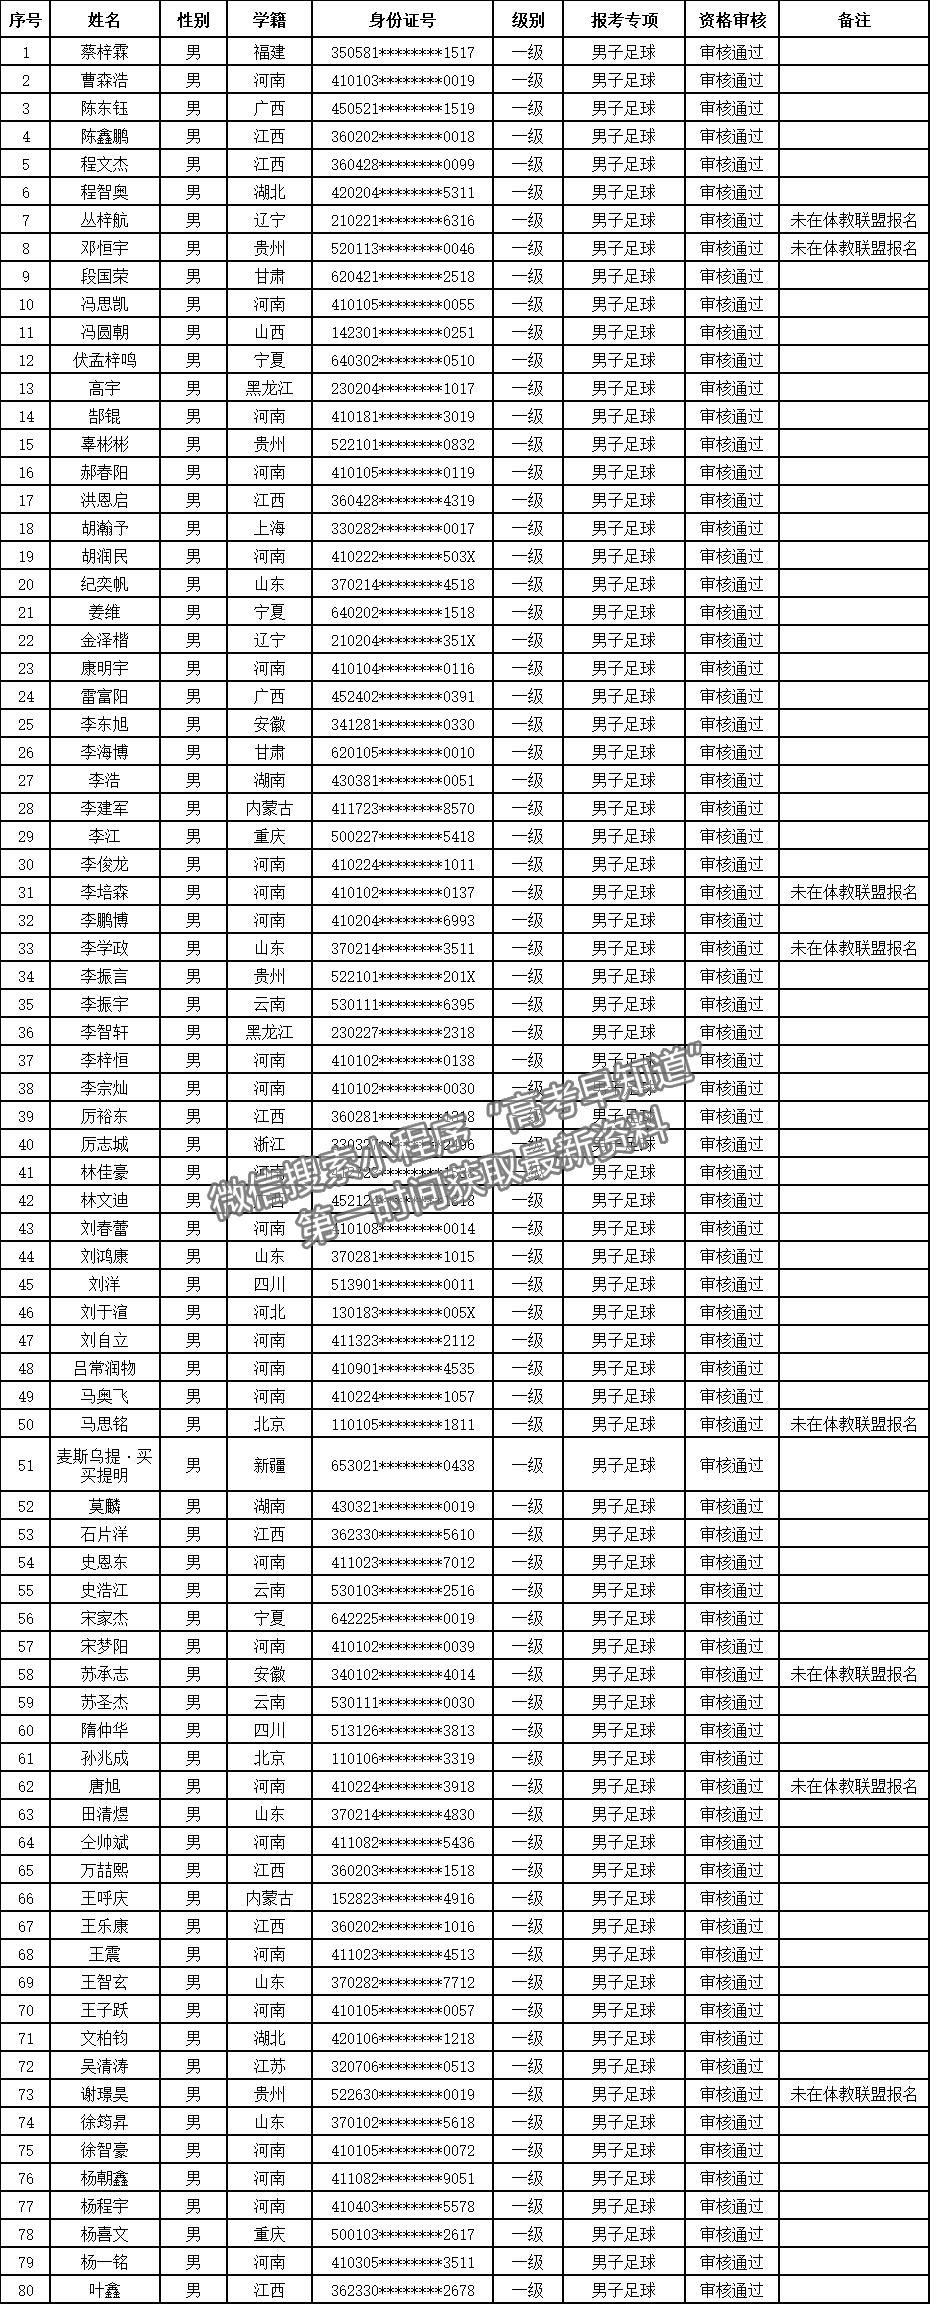 河南财经政法大学2021年高水平运动队足球与武术（套路）项目资格审核通过名单公示